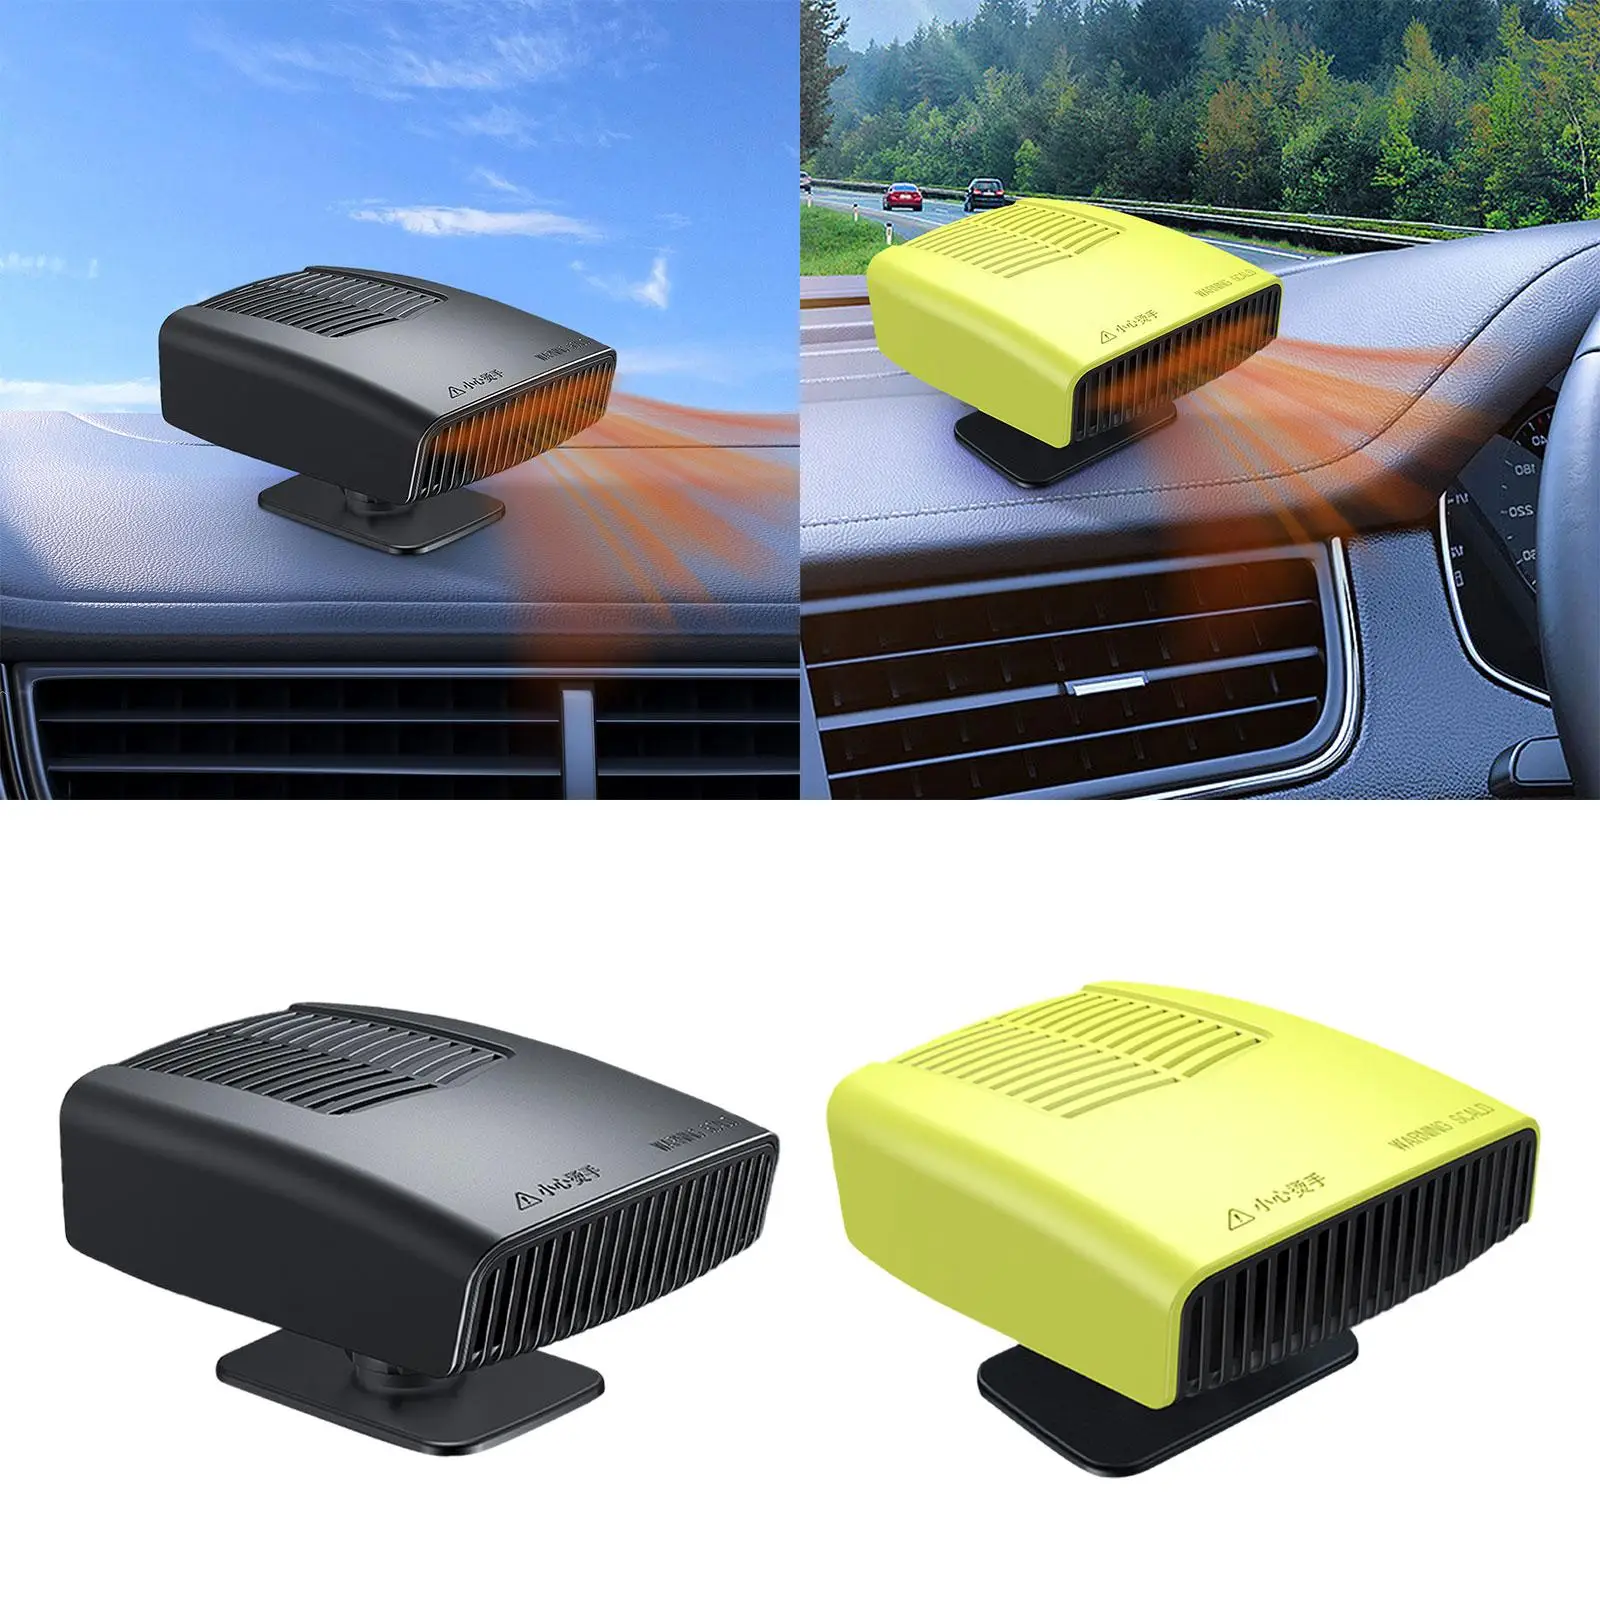 

12V 150W Portable Car Heater Fan Windscreen Defogger 13.8x9.5x5.4cm for Automotive in Winter